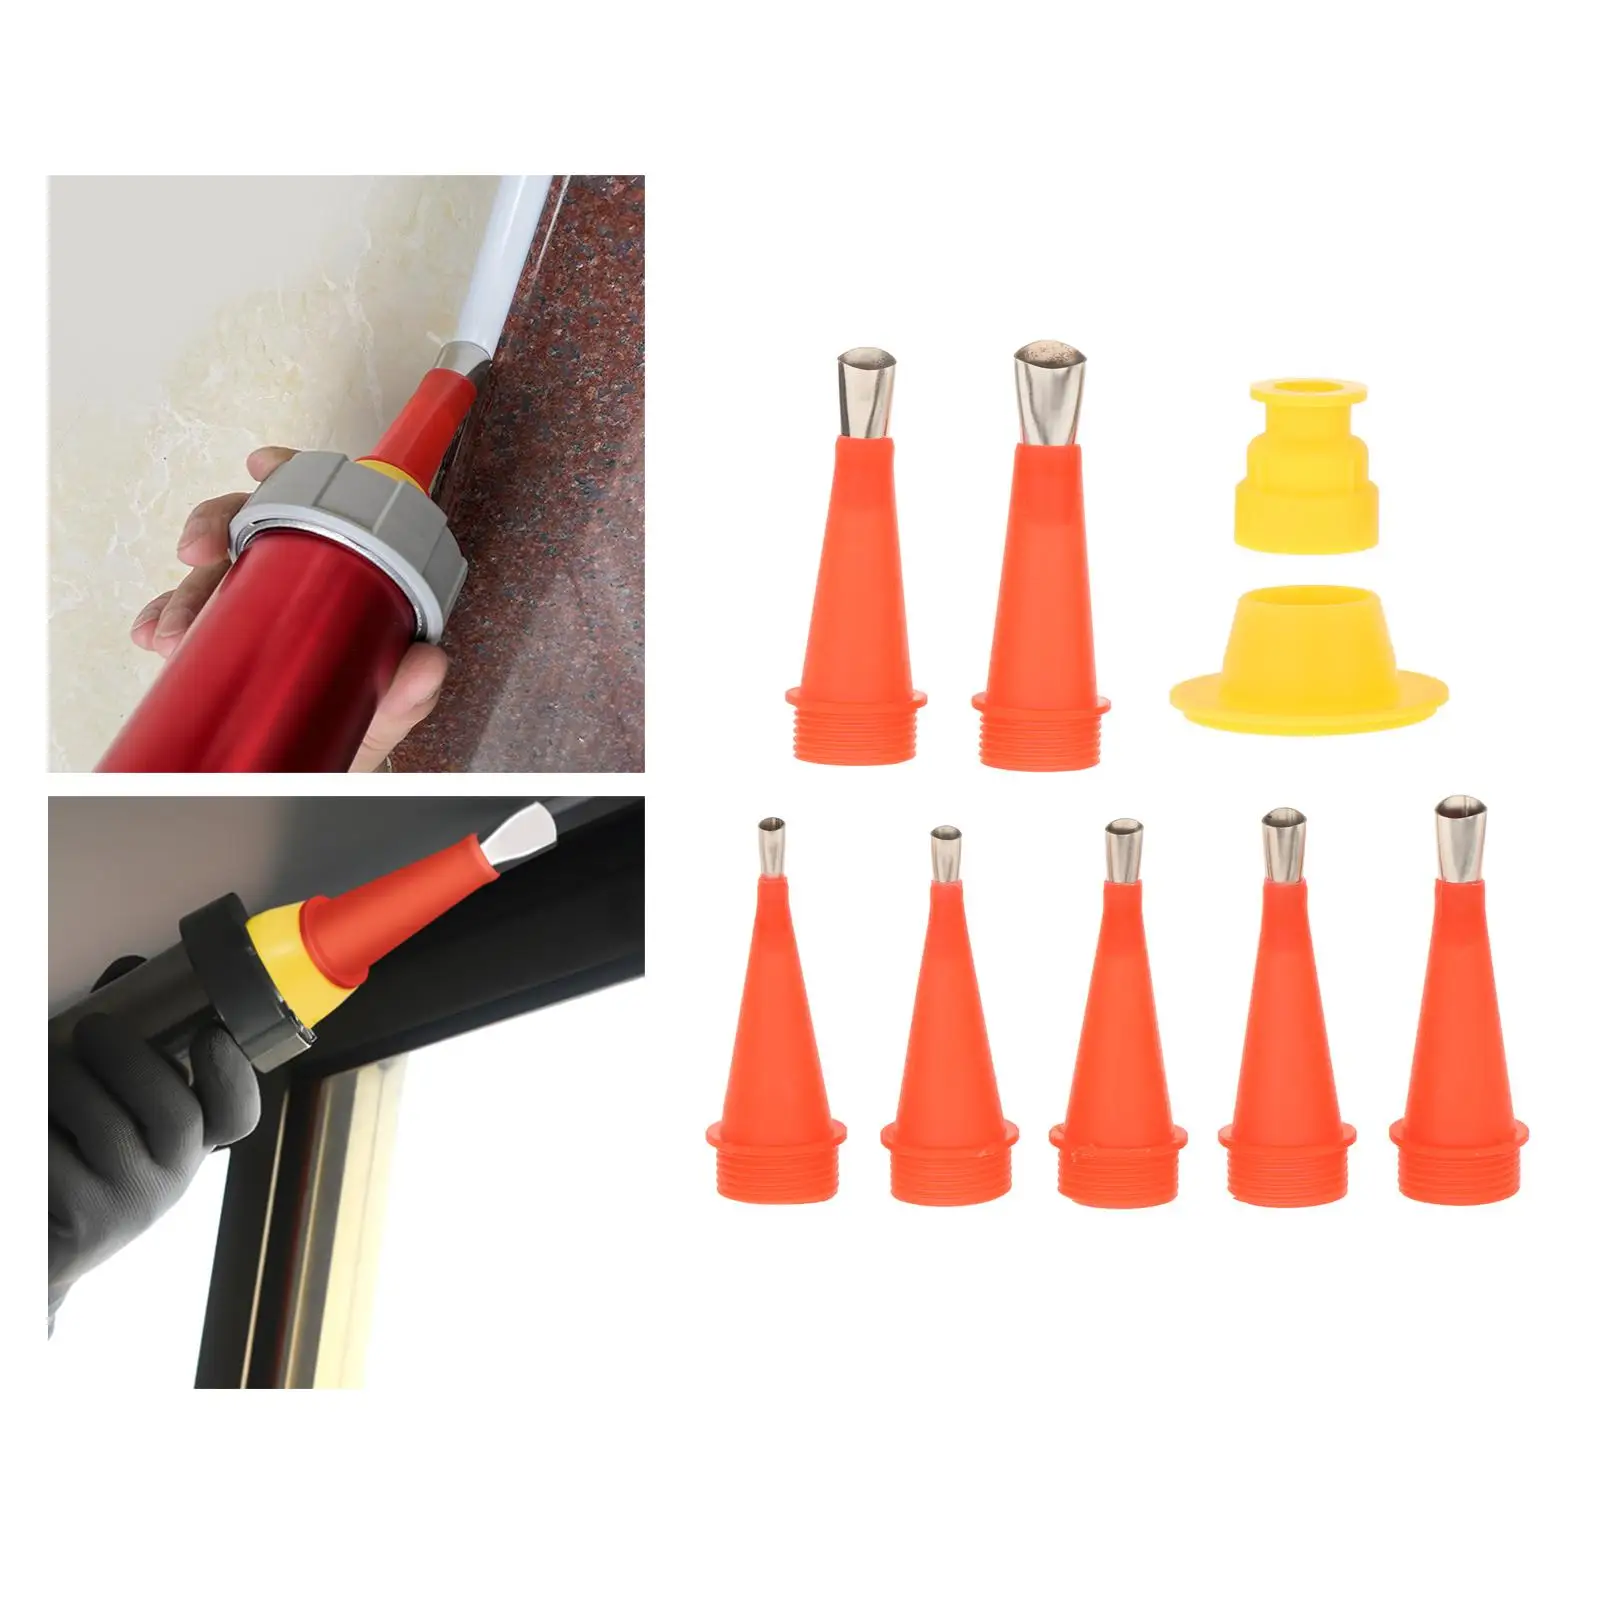 9x Caulking Nozzle Tool Set Sealant Caulking Finishing Tool with Bases Replacement Caulking Finisher Nozzle Kit for Kitchen Home